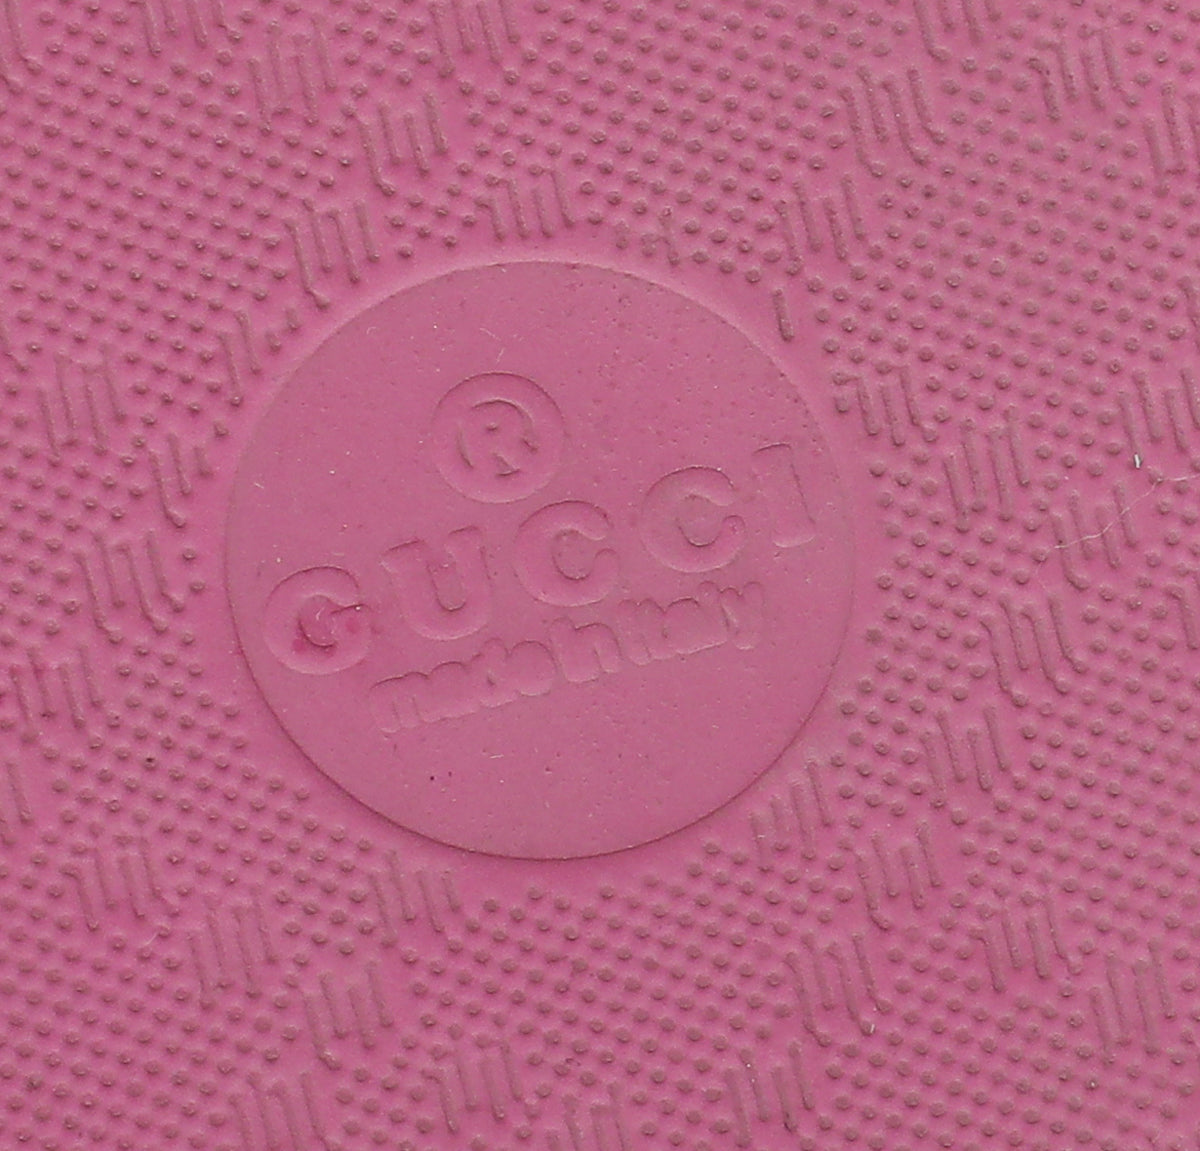 Gucci Pink Logo Rubber Slide Sandal 42